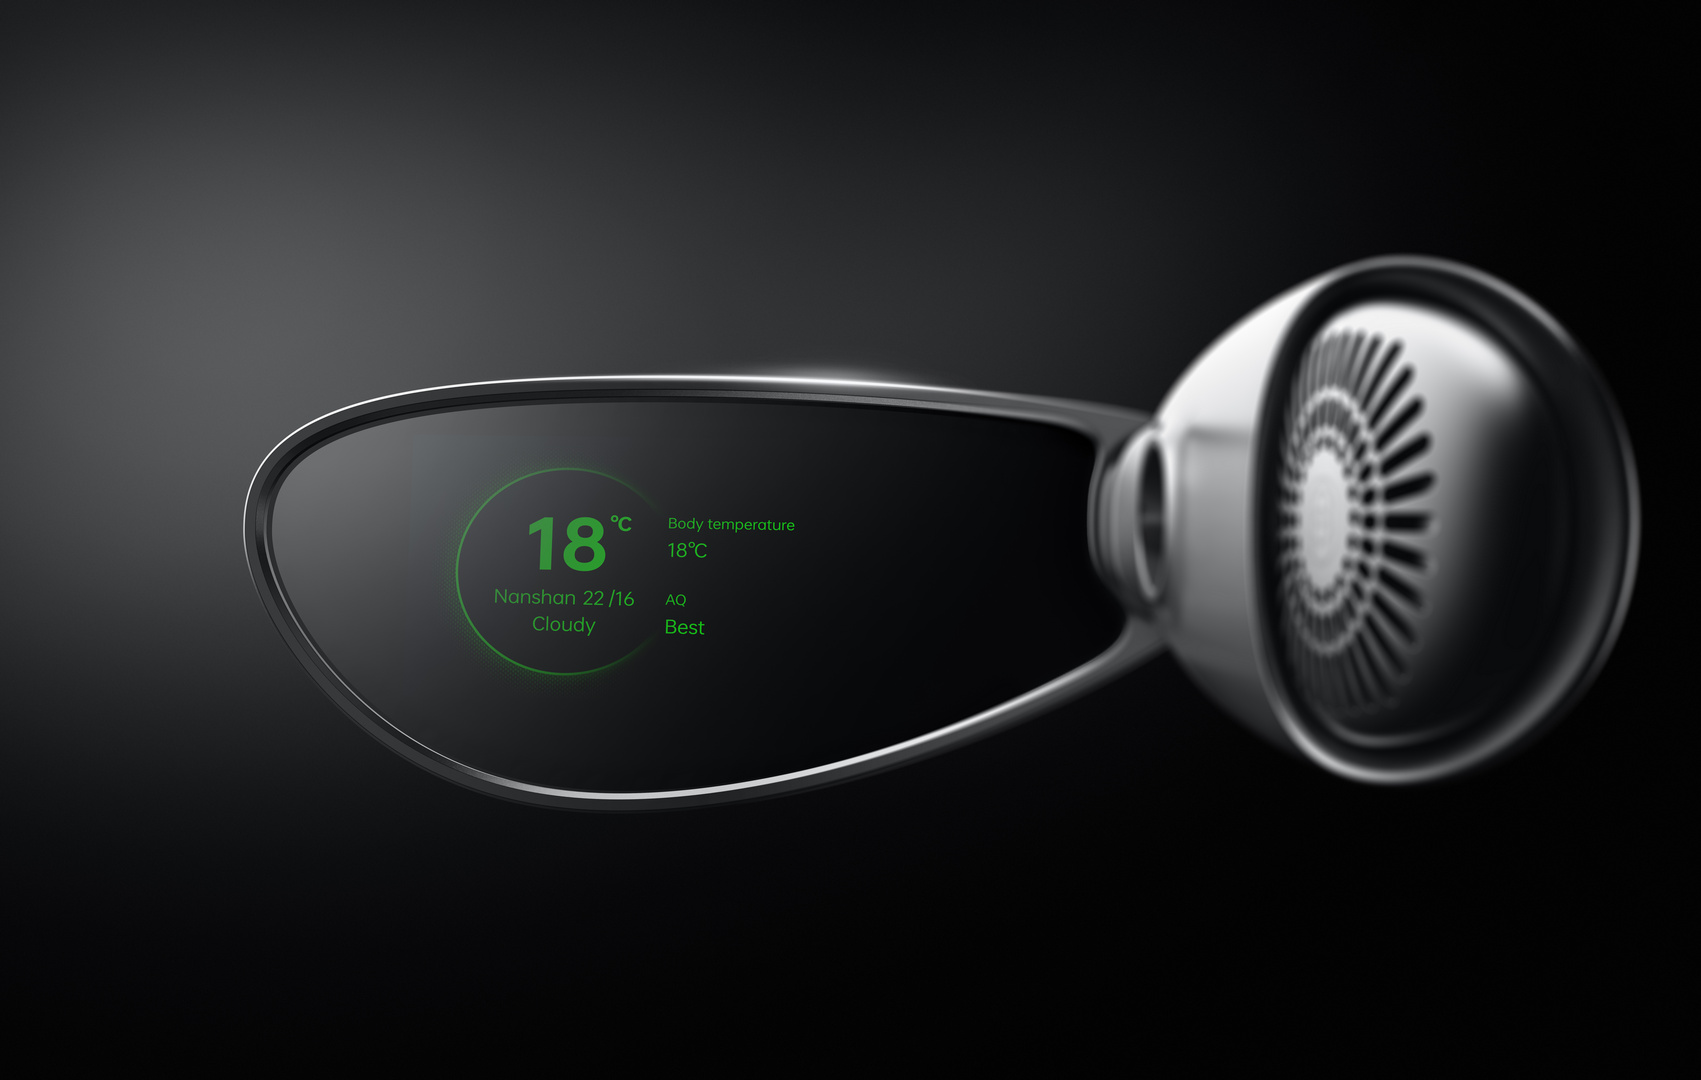 OPPOがメガネ端末 Air Glass 発表。単眼単色で軽い「アシステッドリアリティ」